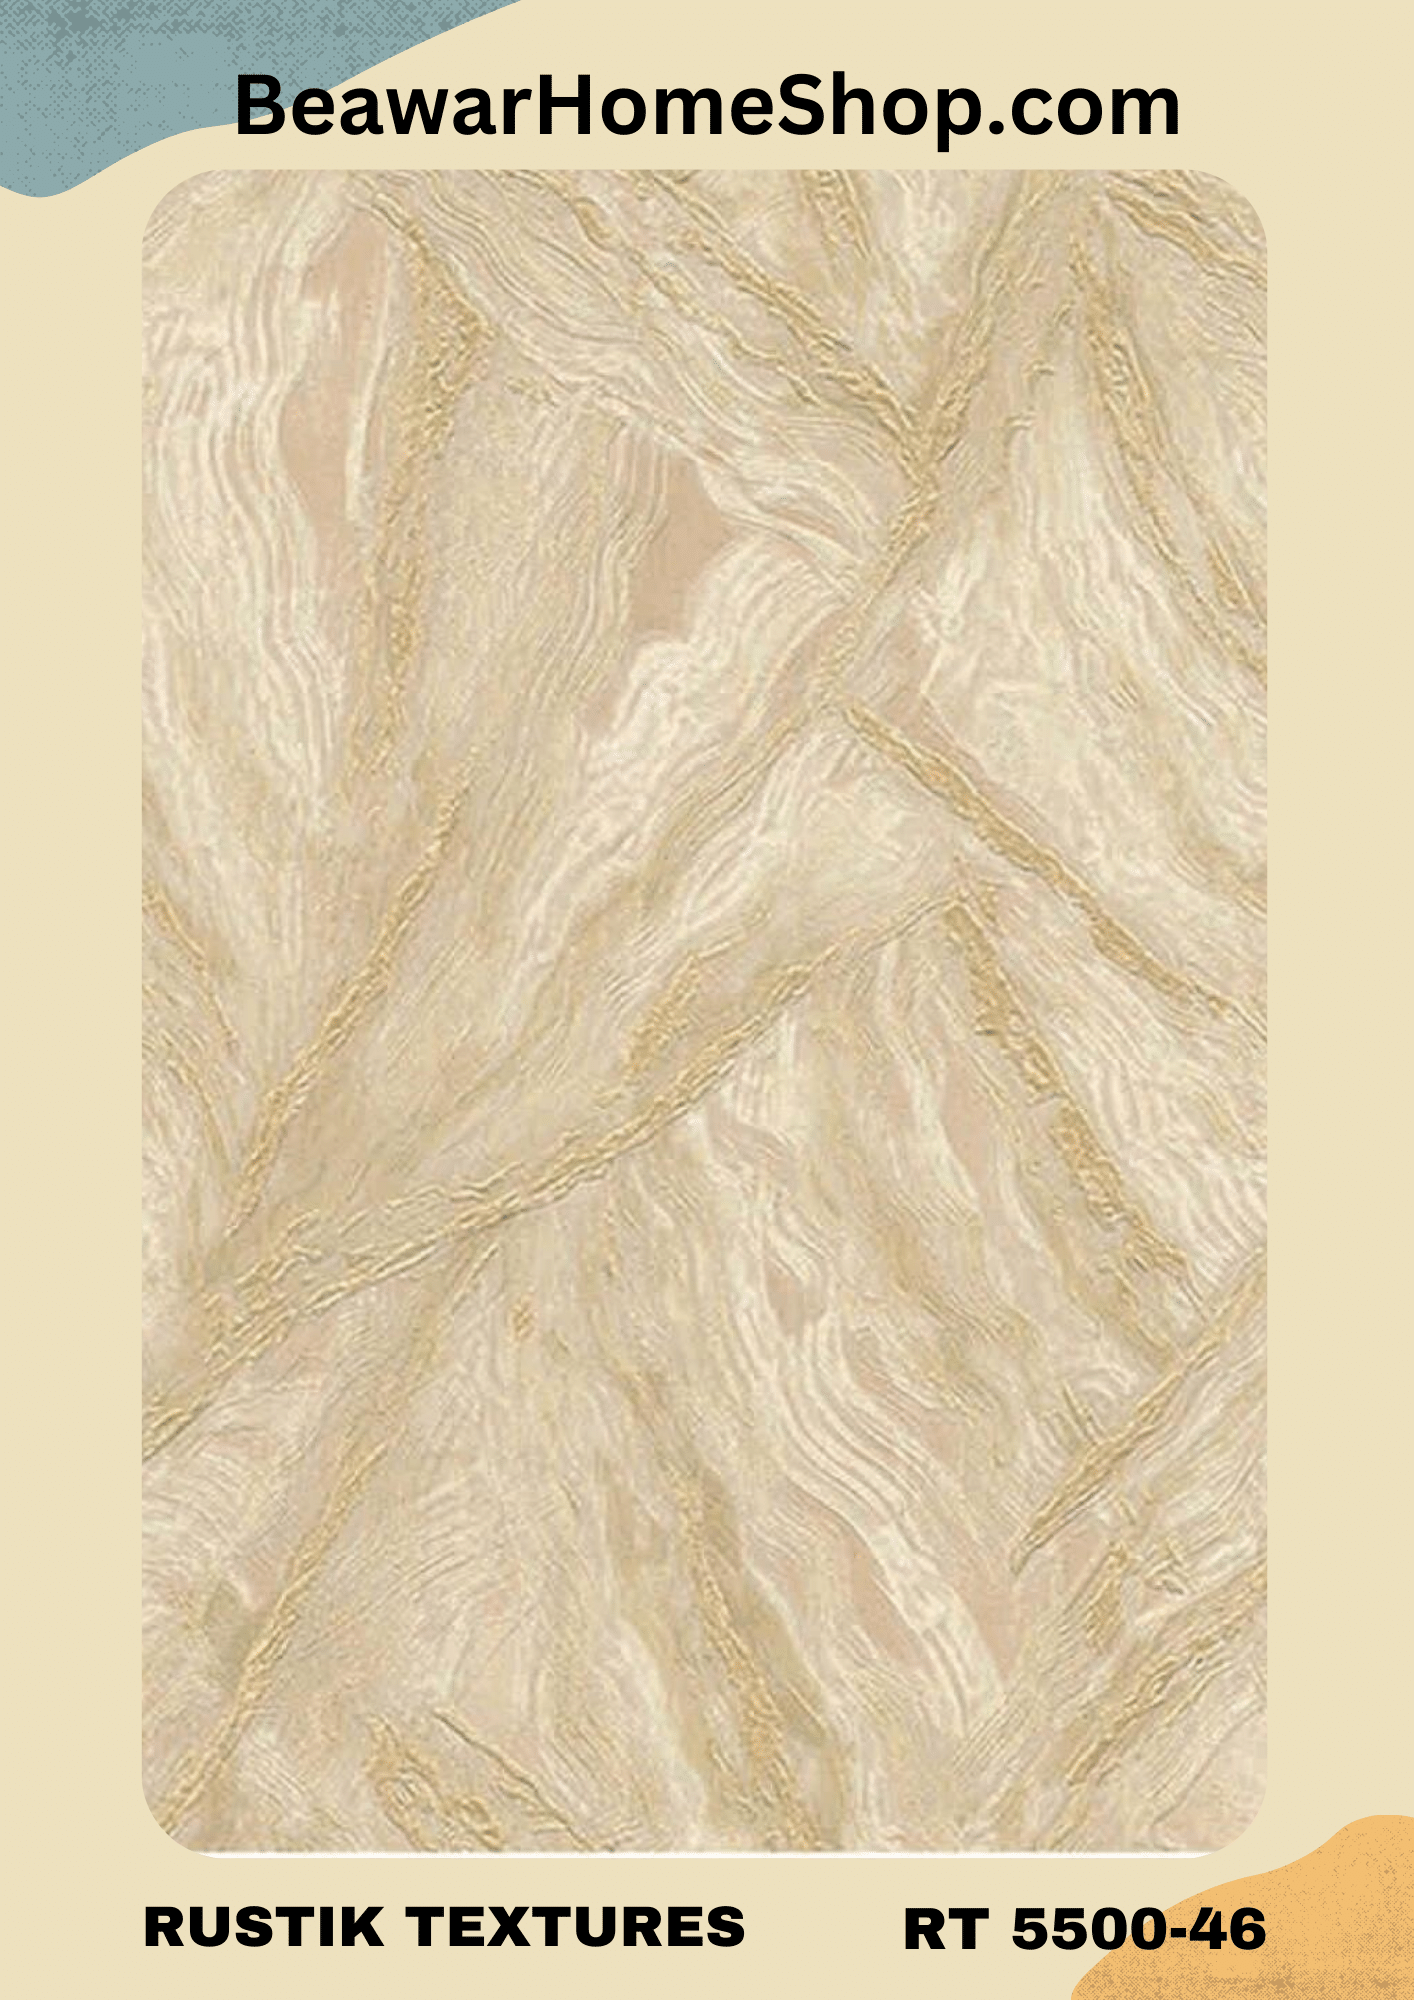 DC Rustik Textures Wallpaper RT 55043-49